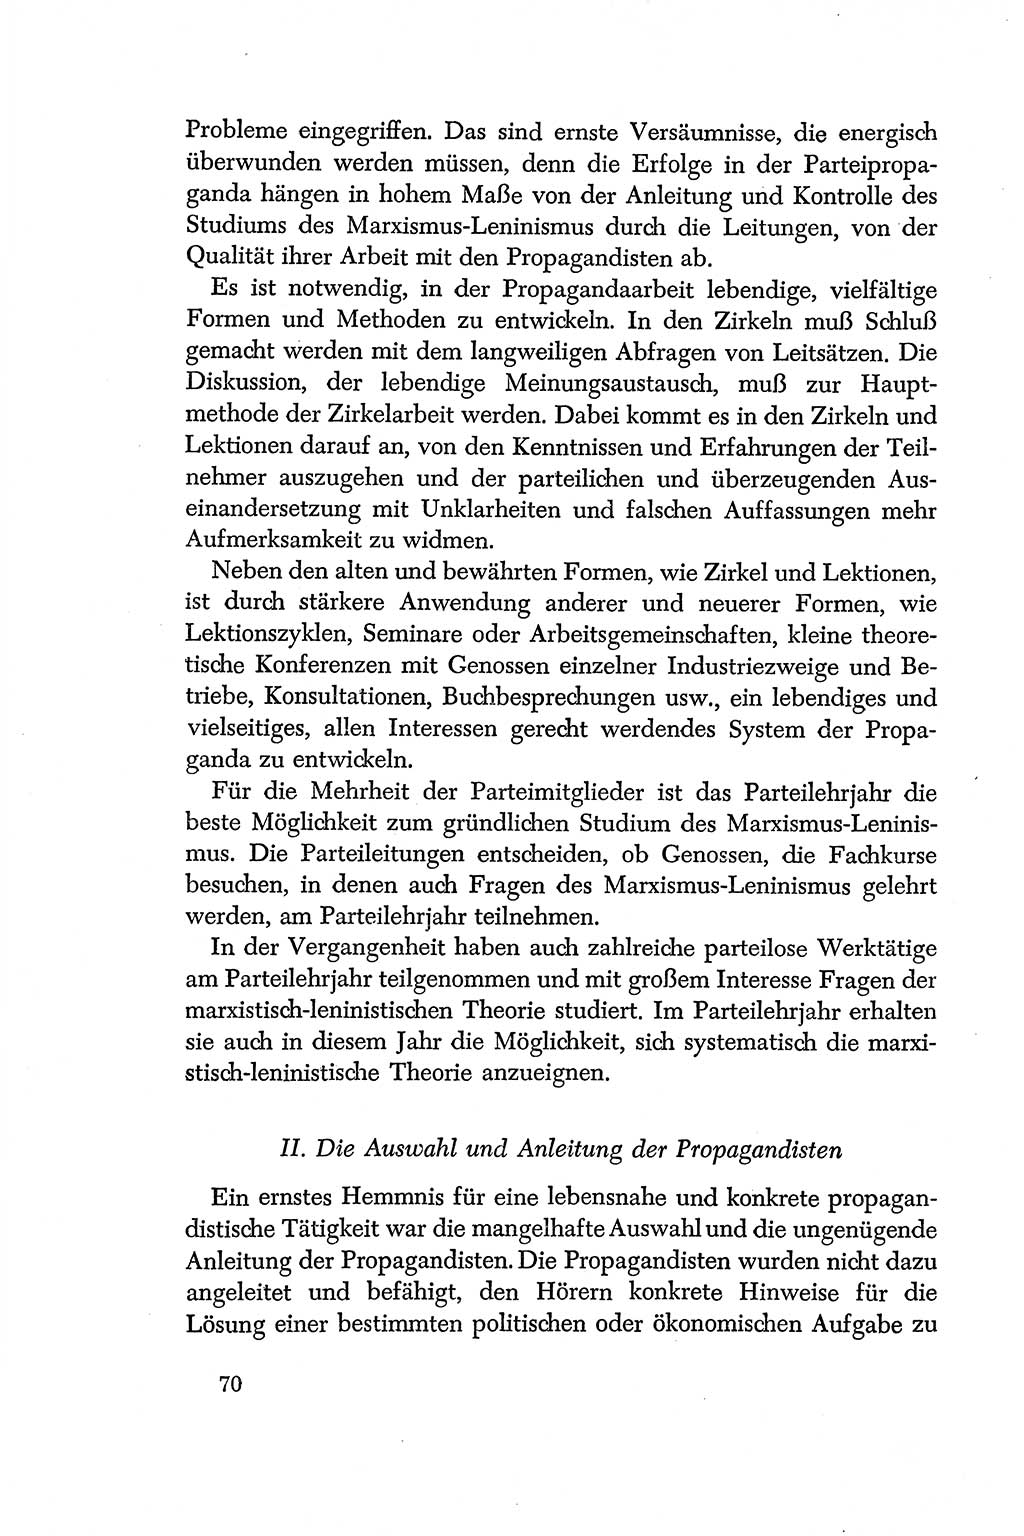 Dokumente der Sozialistischen Einheitspartei Deutschlands (SED) [Deutsche Demokratische Republik (DDR)] 1956-1957, Seite 70 (Dok. SED DDR 1956-1957, S. 70)